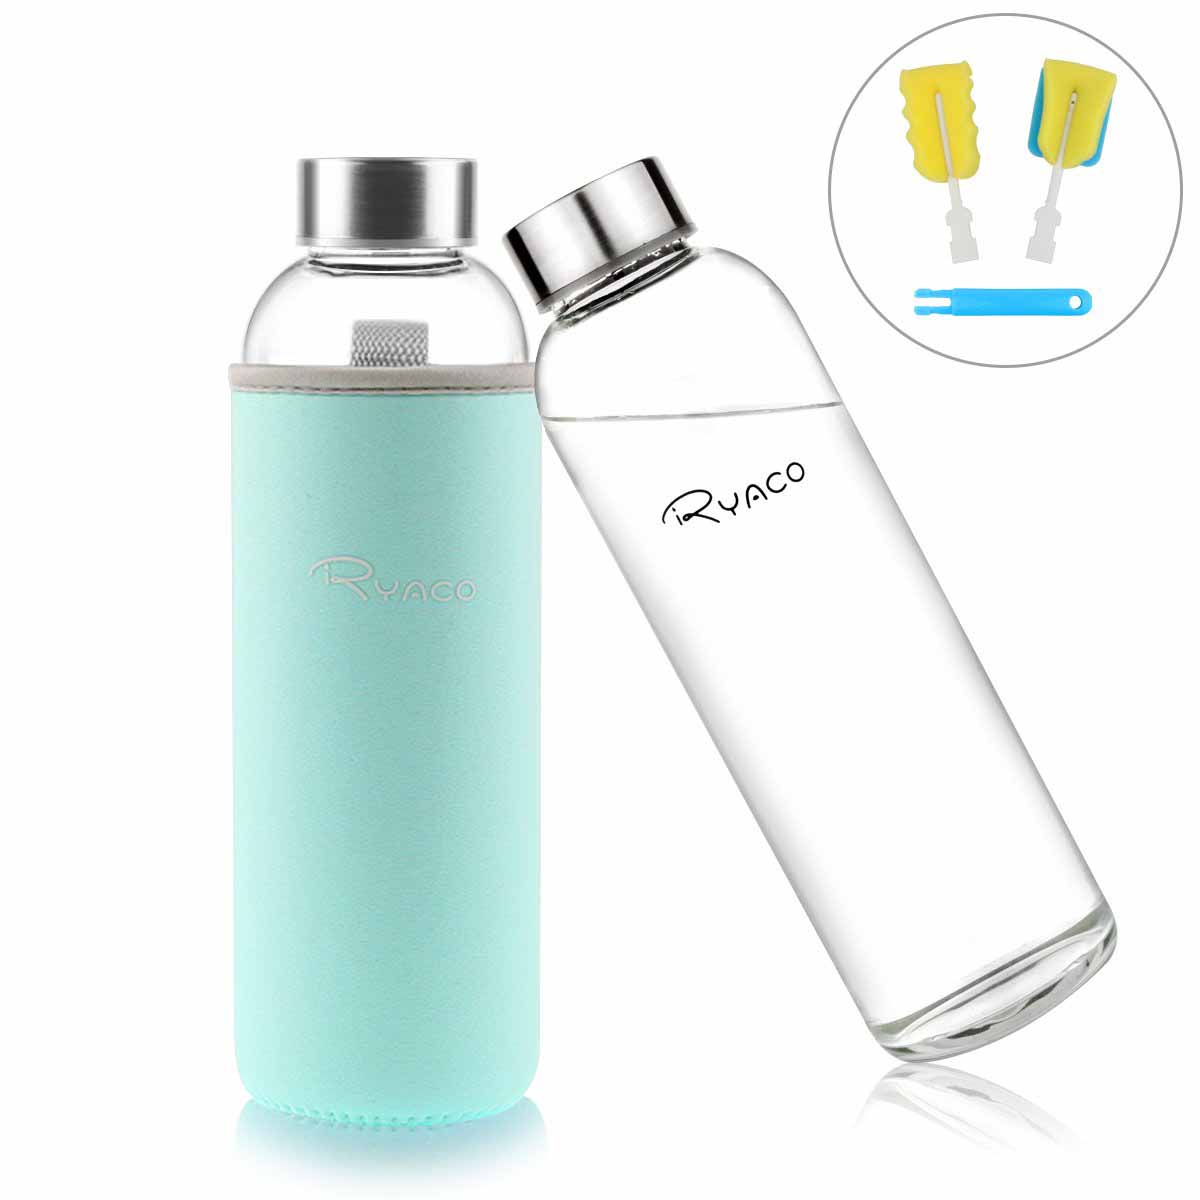 Ryaco Botella de Agua Cristal 550ml, Botella de Agua Reutilizable, Sin BPA Antideslizante Protección Neopreno Llevar Manga y Cepillo de Esponja